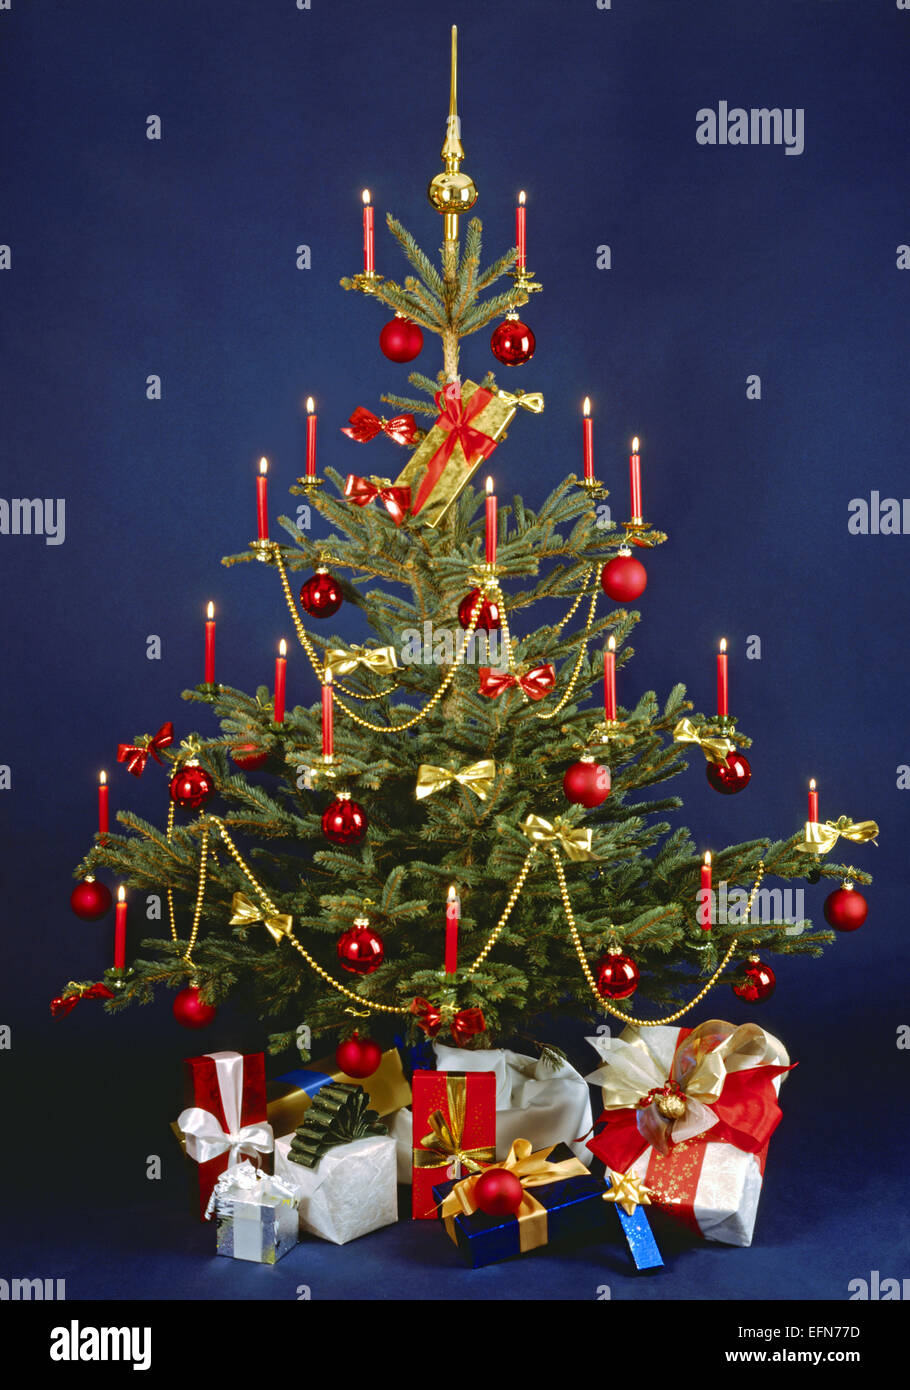 Weihnachtsbaum, geschmueckt, Geschenke, Stillleben, Weihnachten, Christbaum, Kerzen, Christbaumschmuck, Christbaumkugeln, Kugeln Stock Photo